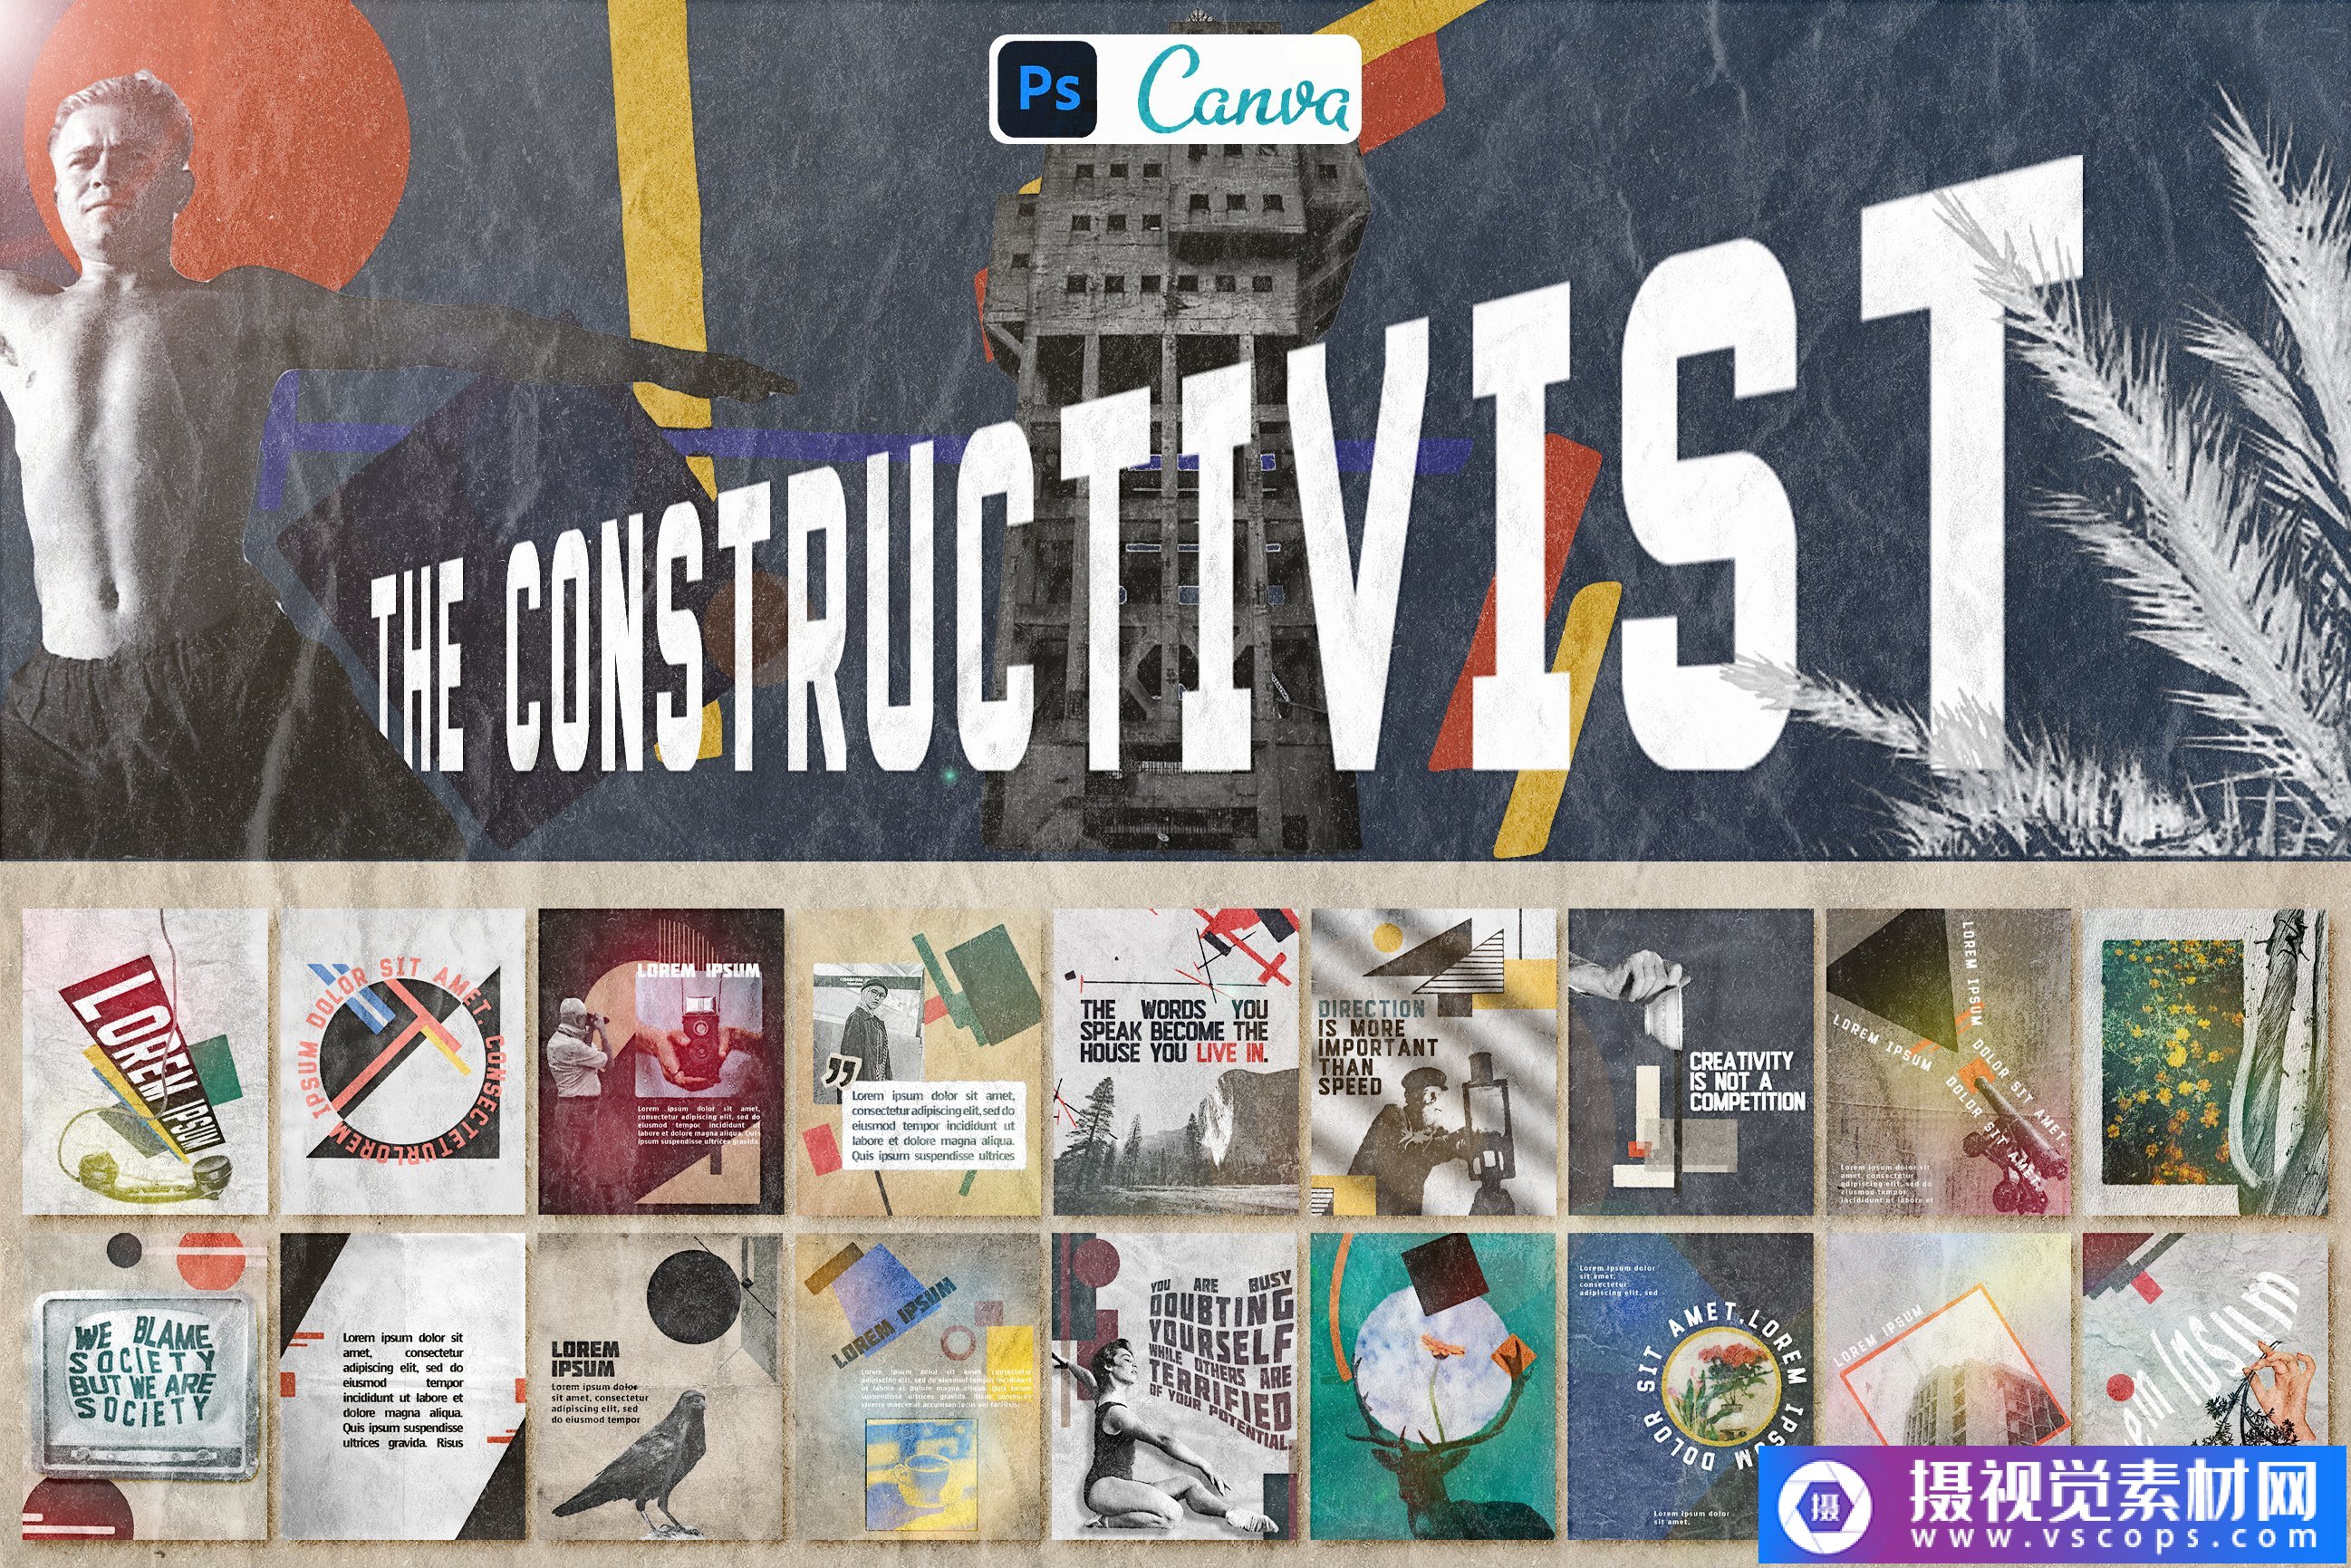 优质的复古马列维奇建构主义者艺术运动Ins模板帆布模板 The Constructivist Instagram插图